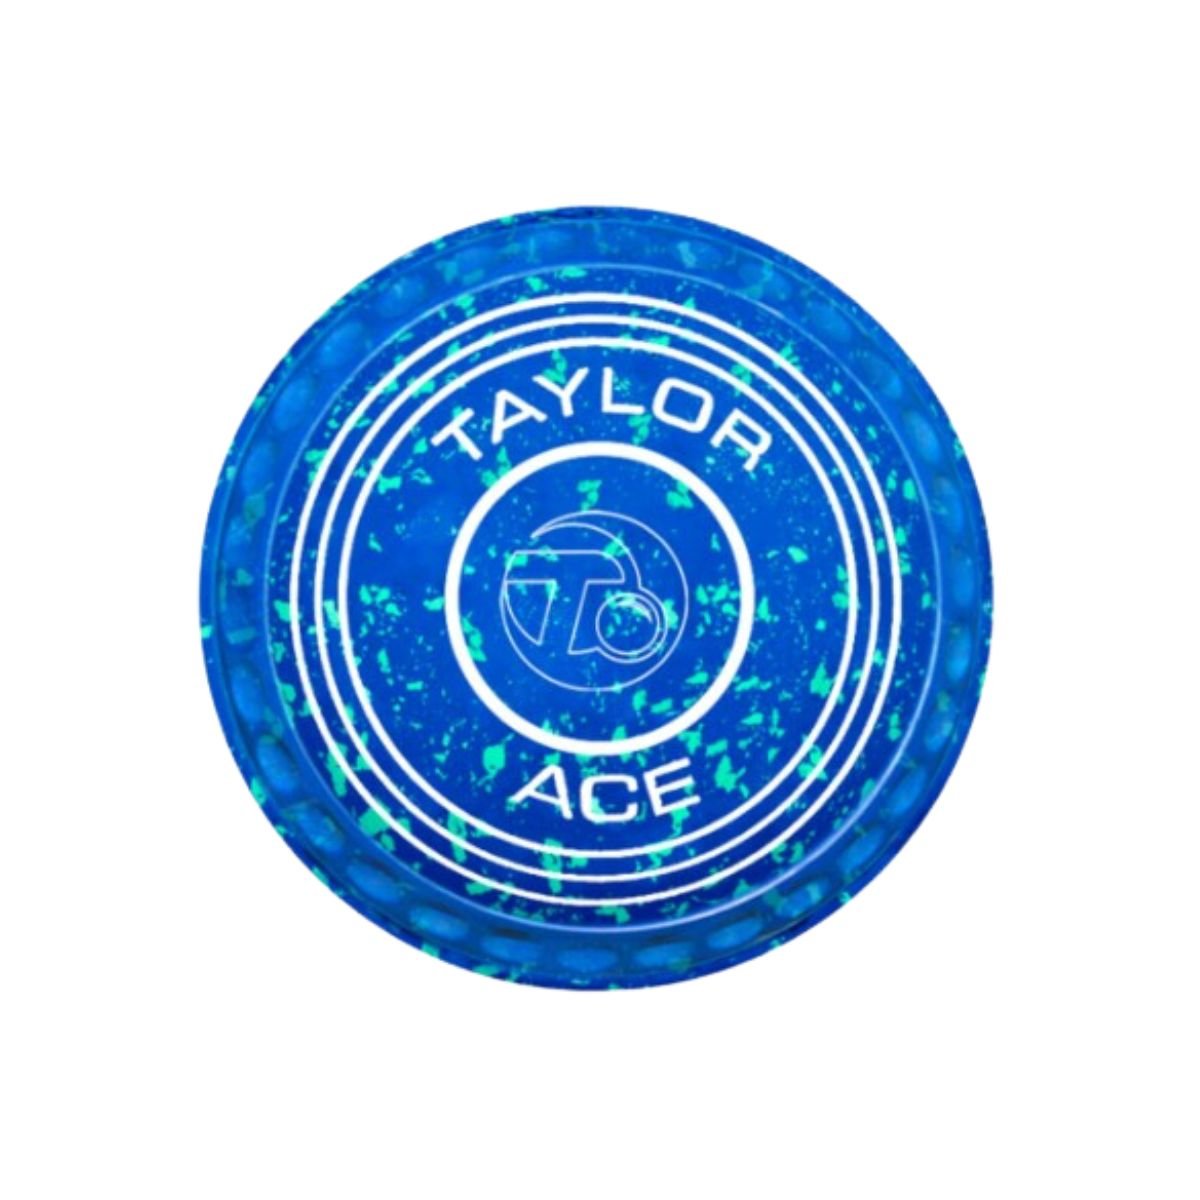 Taylor Ace Pro-Grip Coloured Bowls - 5